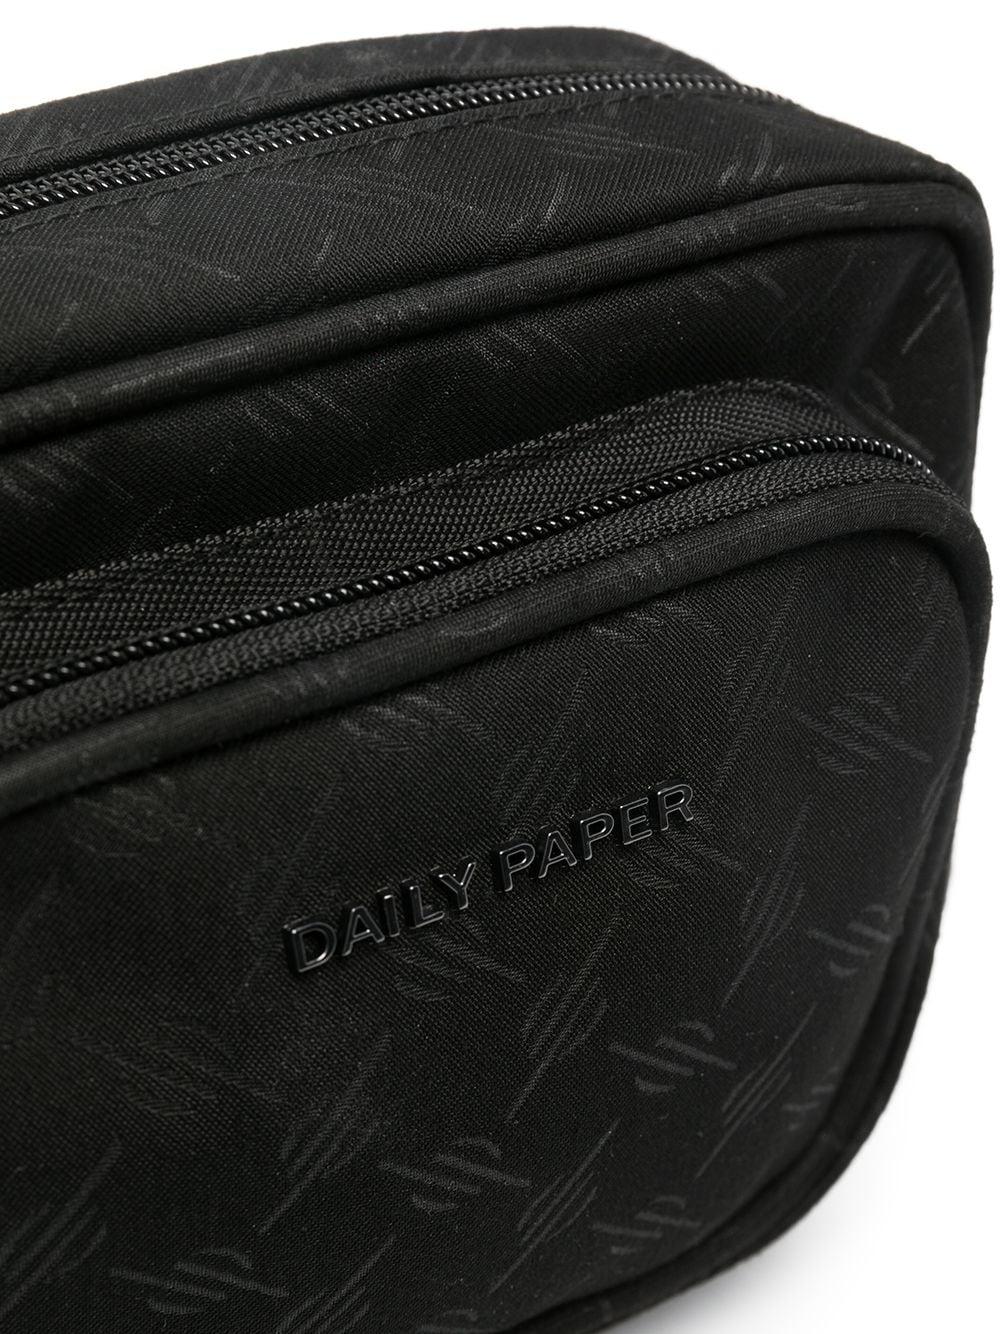 Daily Paper - Black Meru Monogram Bag – Daily Paper US